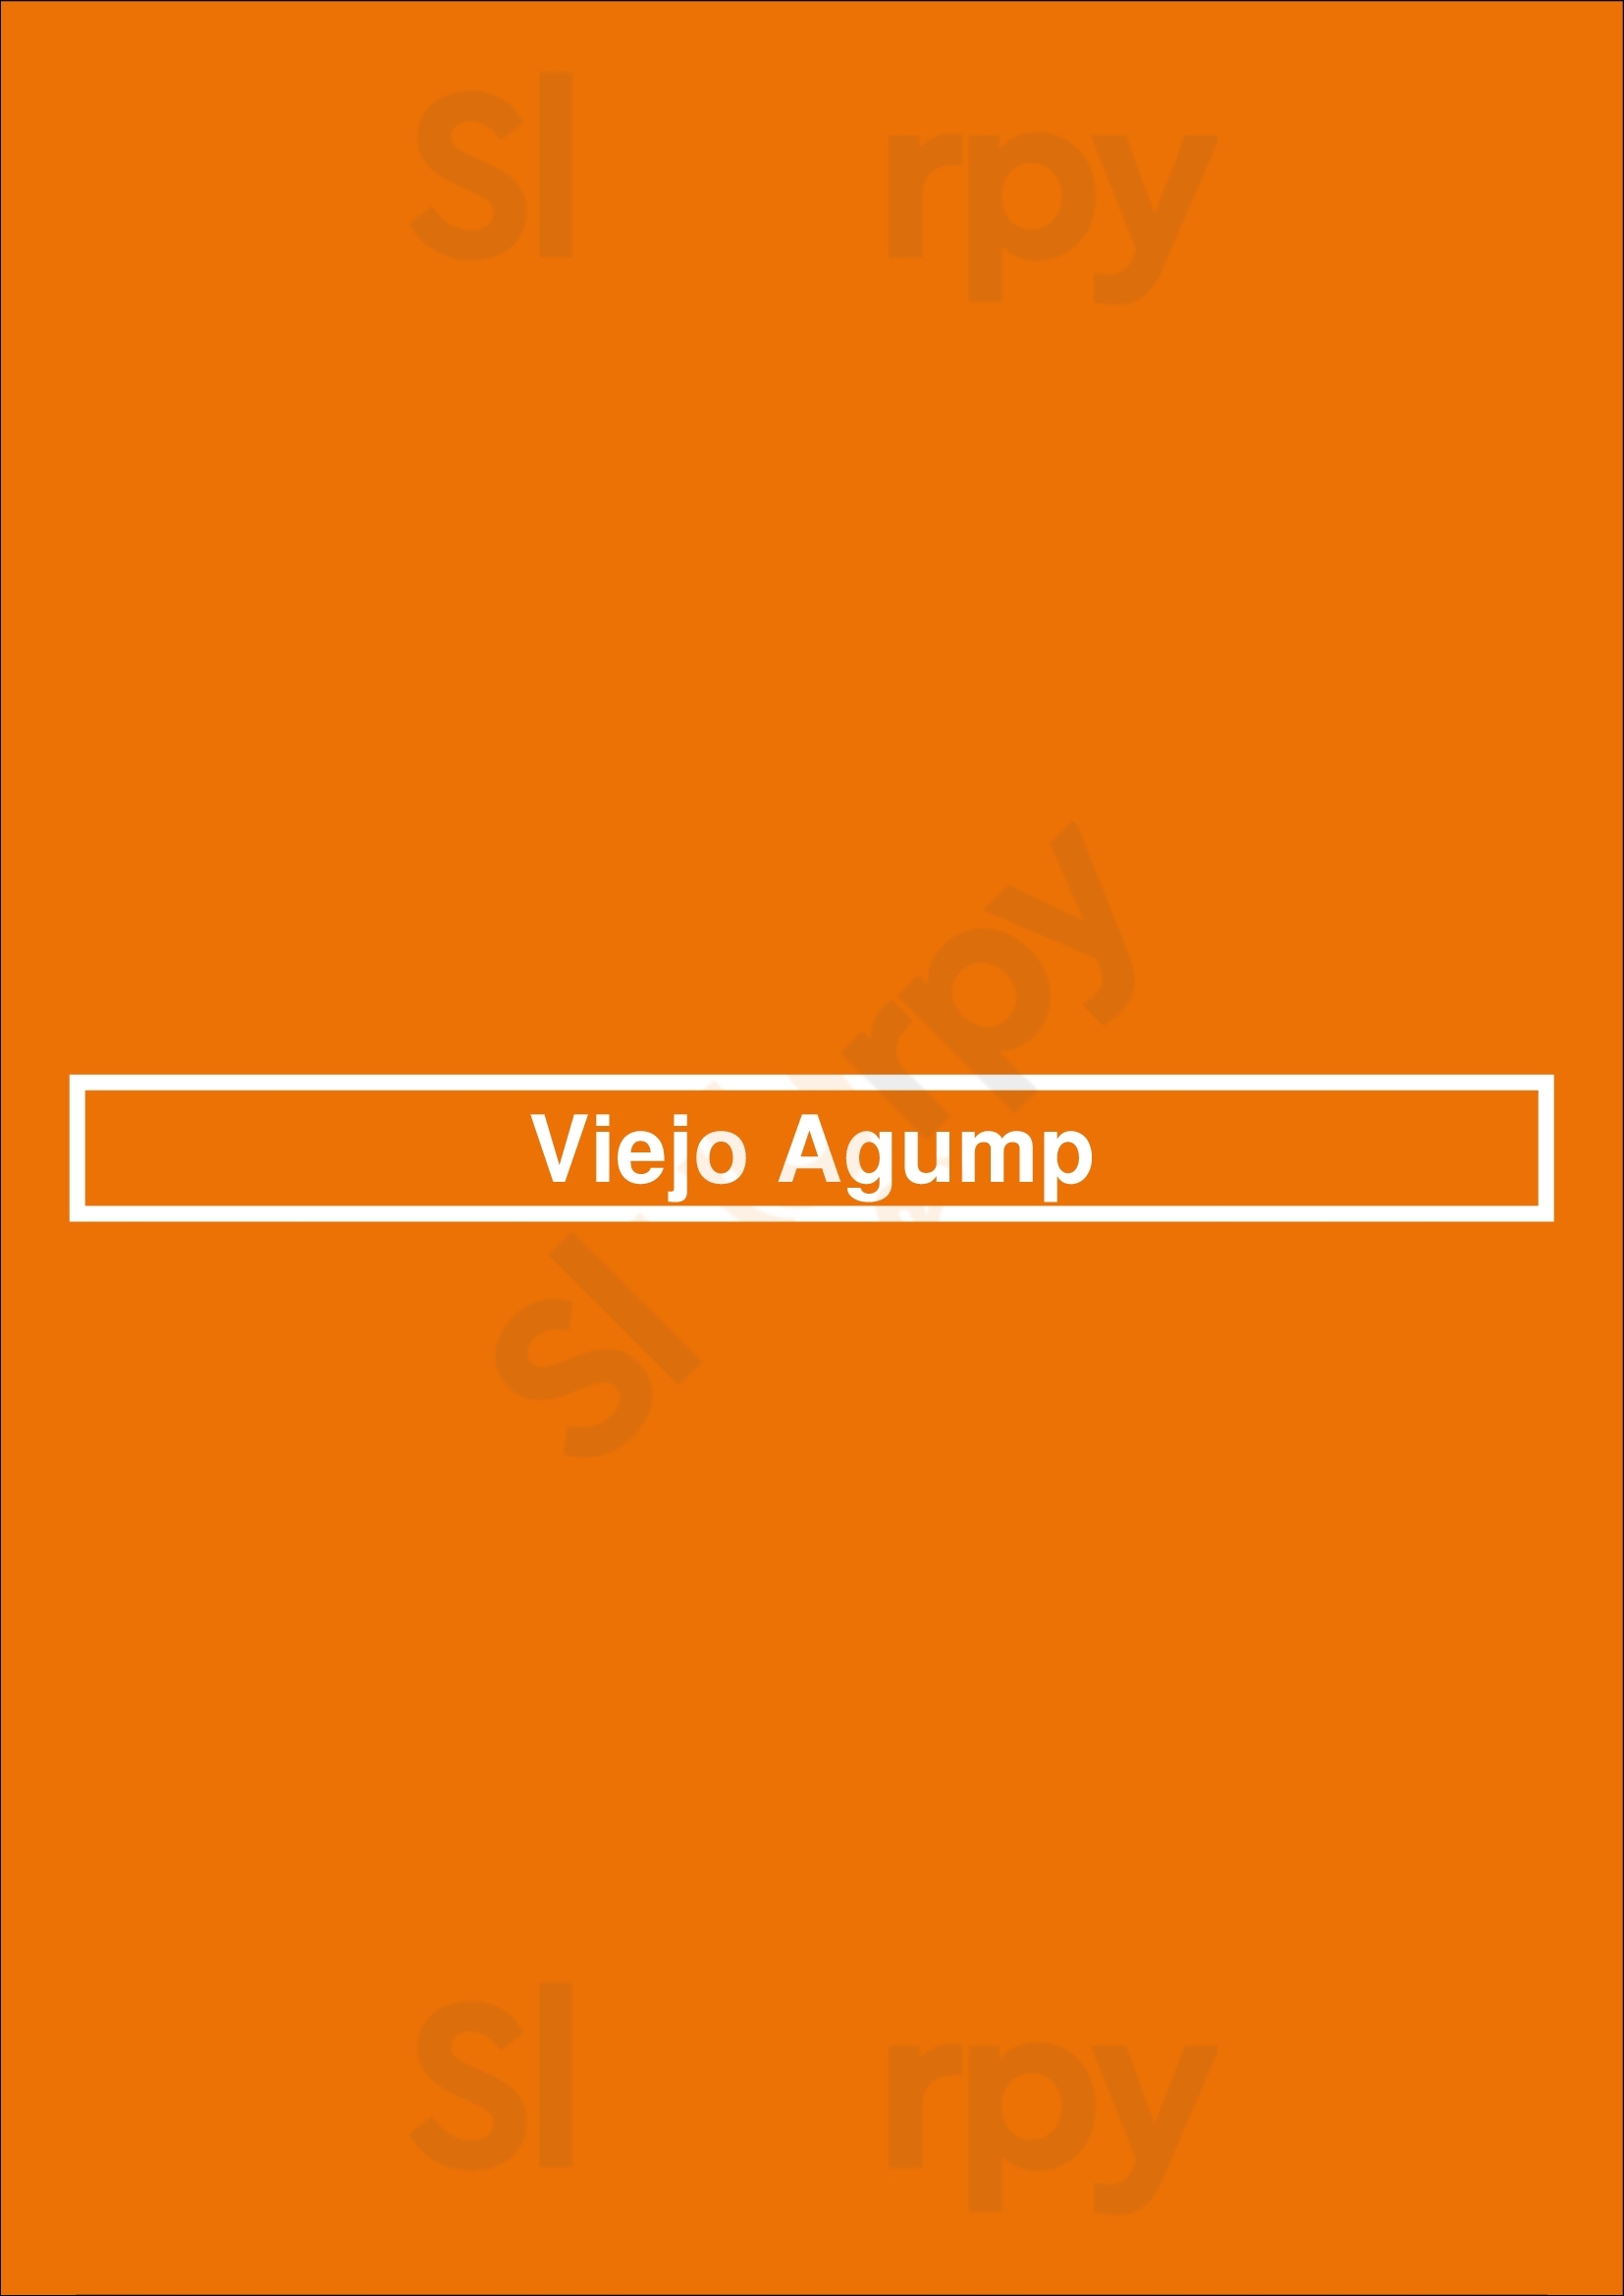 Viejo Agump Buenos Aires Menu - 1